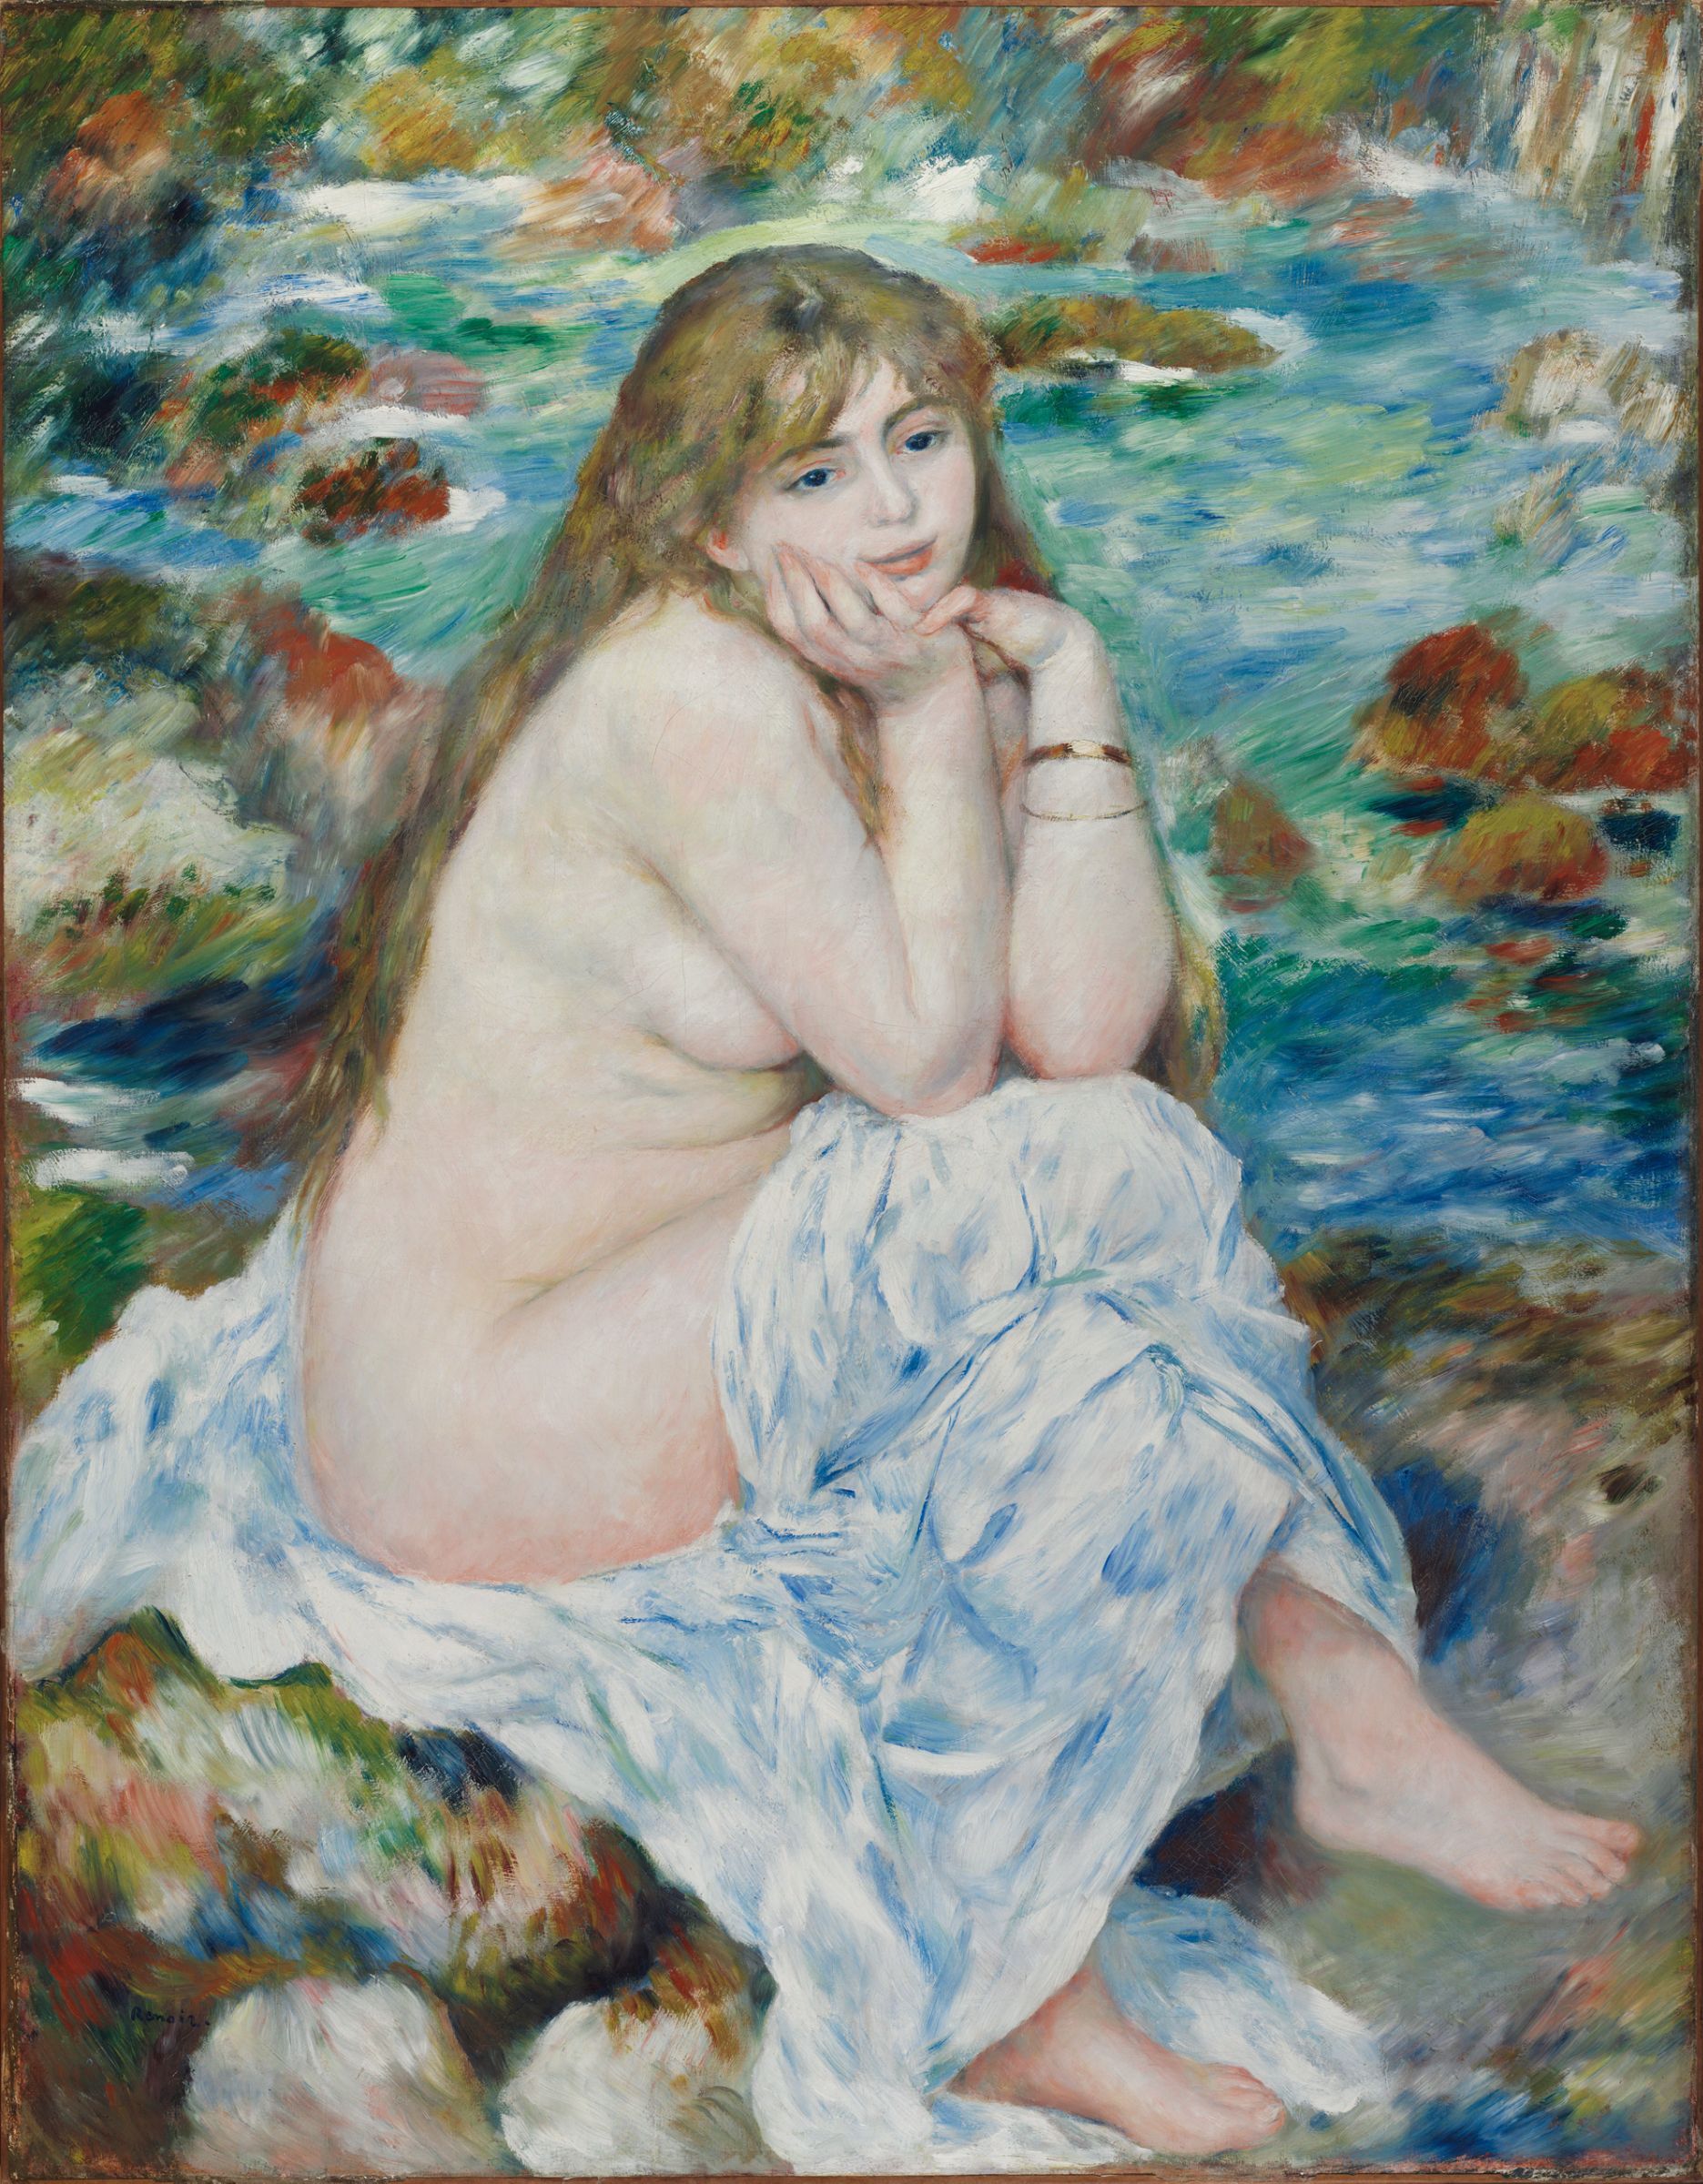 Baigneuse assise by Pierre-Auguste Renoir - c. 1883-1884 Musées d'art de Harvard